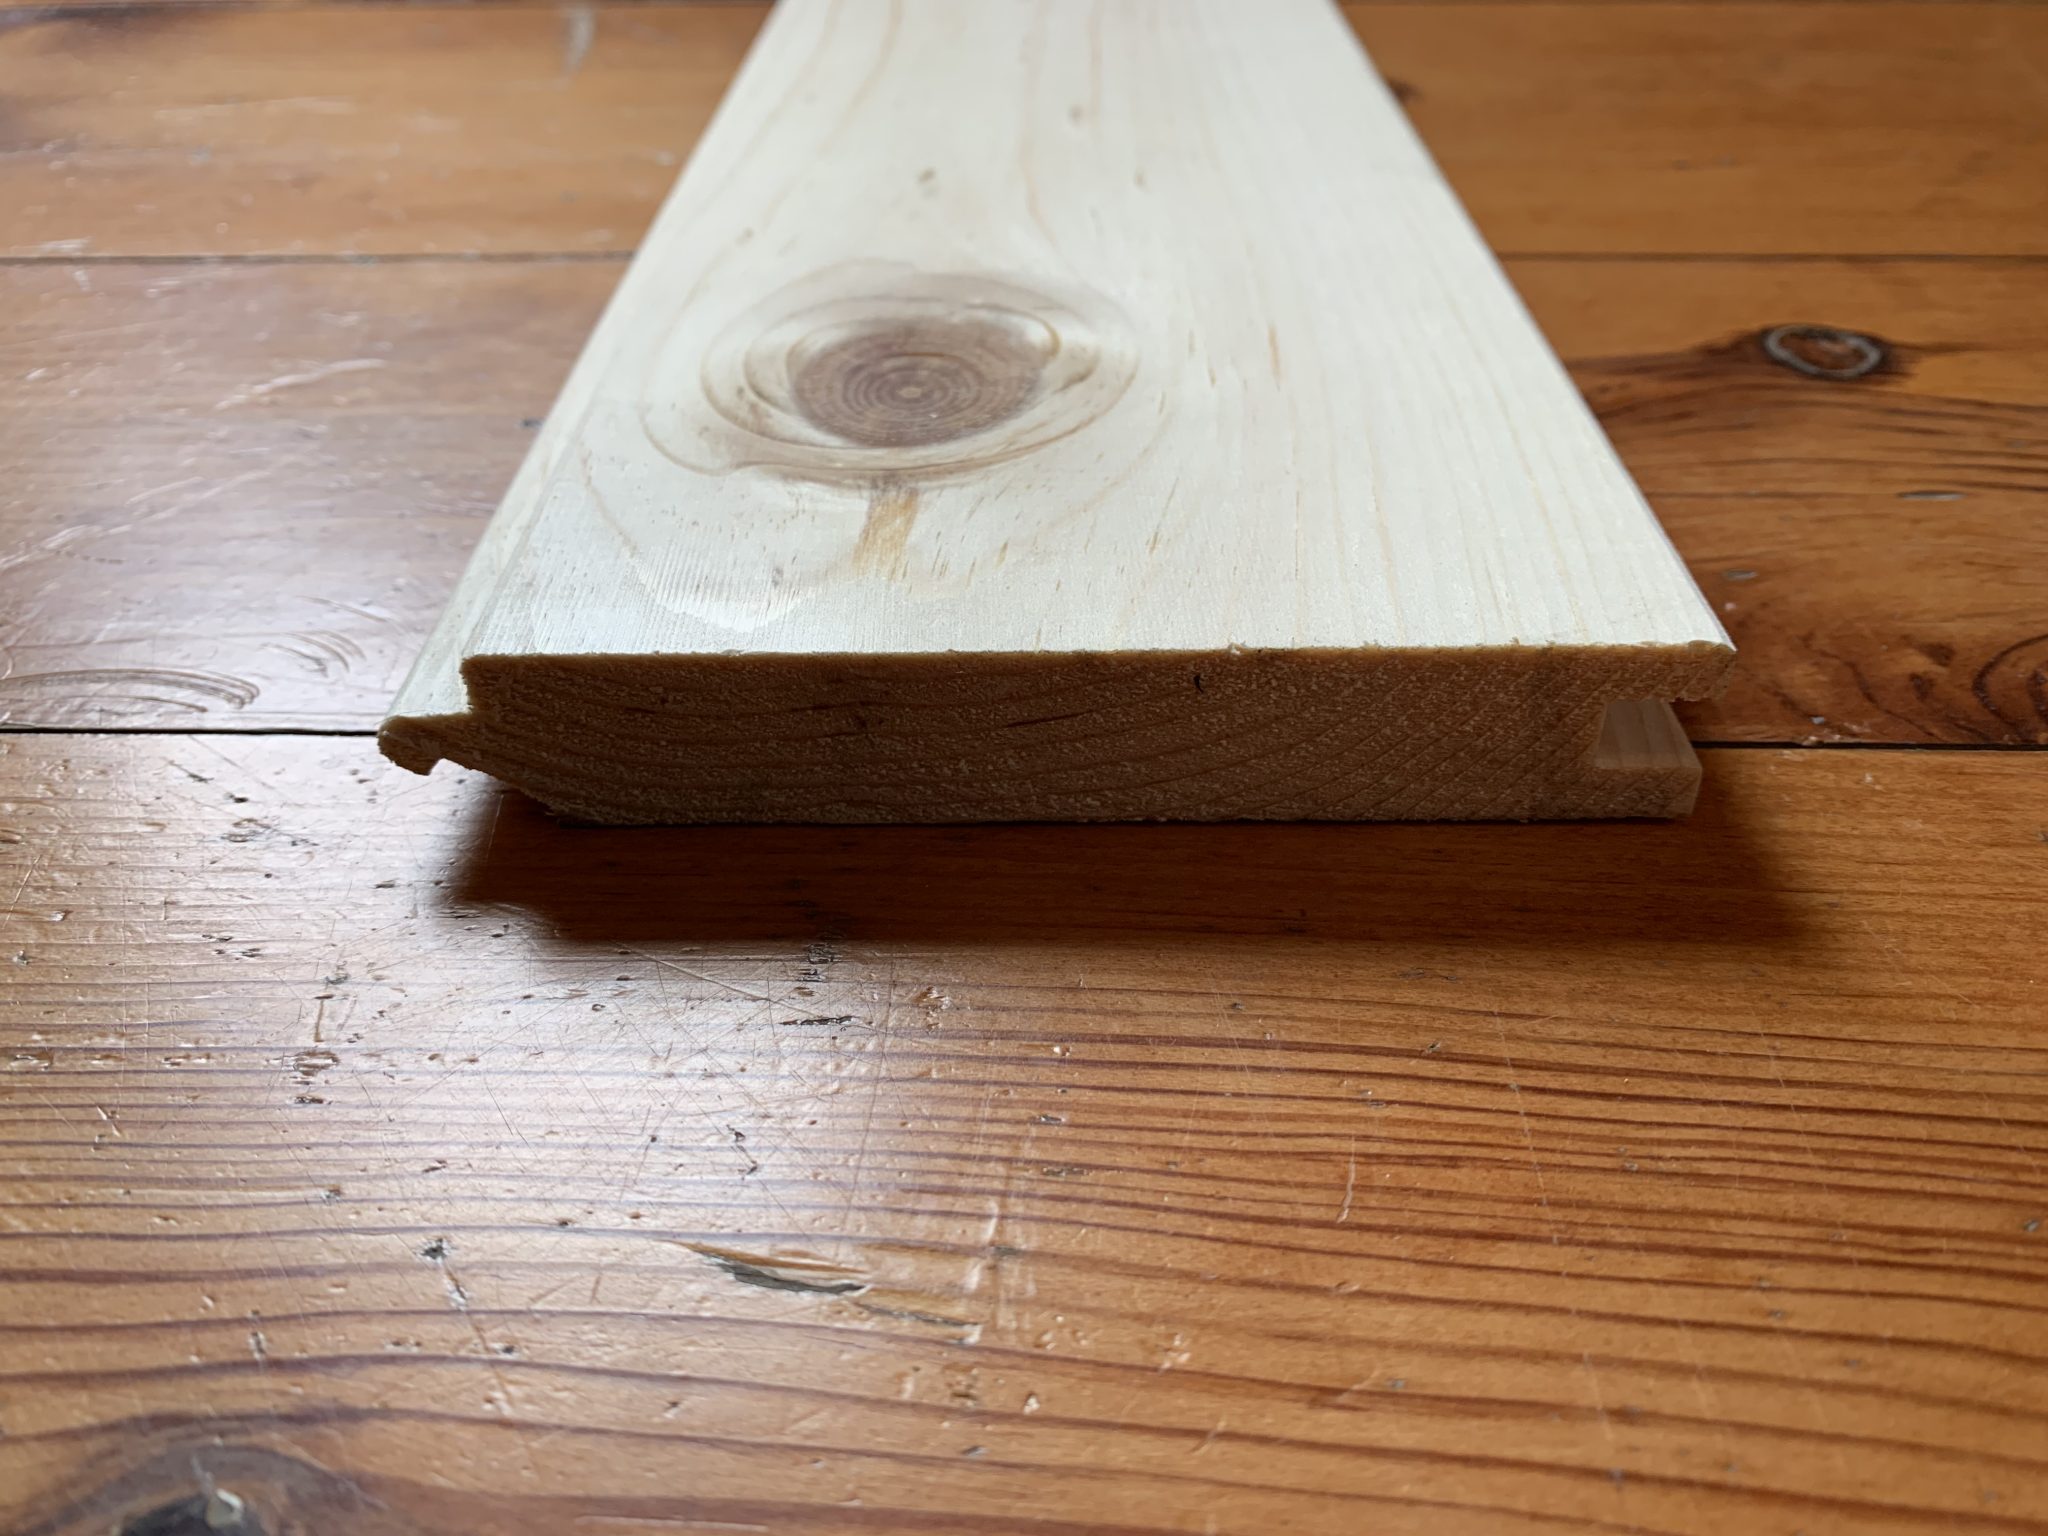 سوالات درباره لمبه چوبی